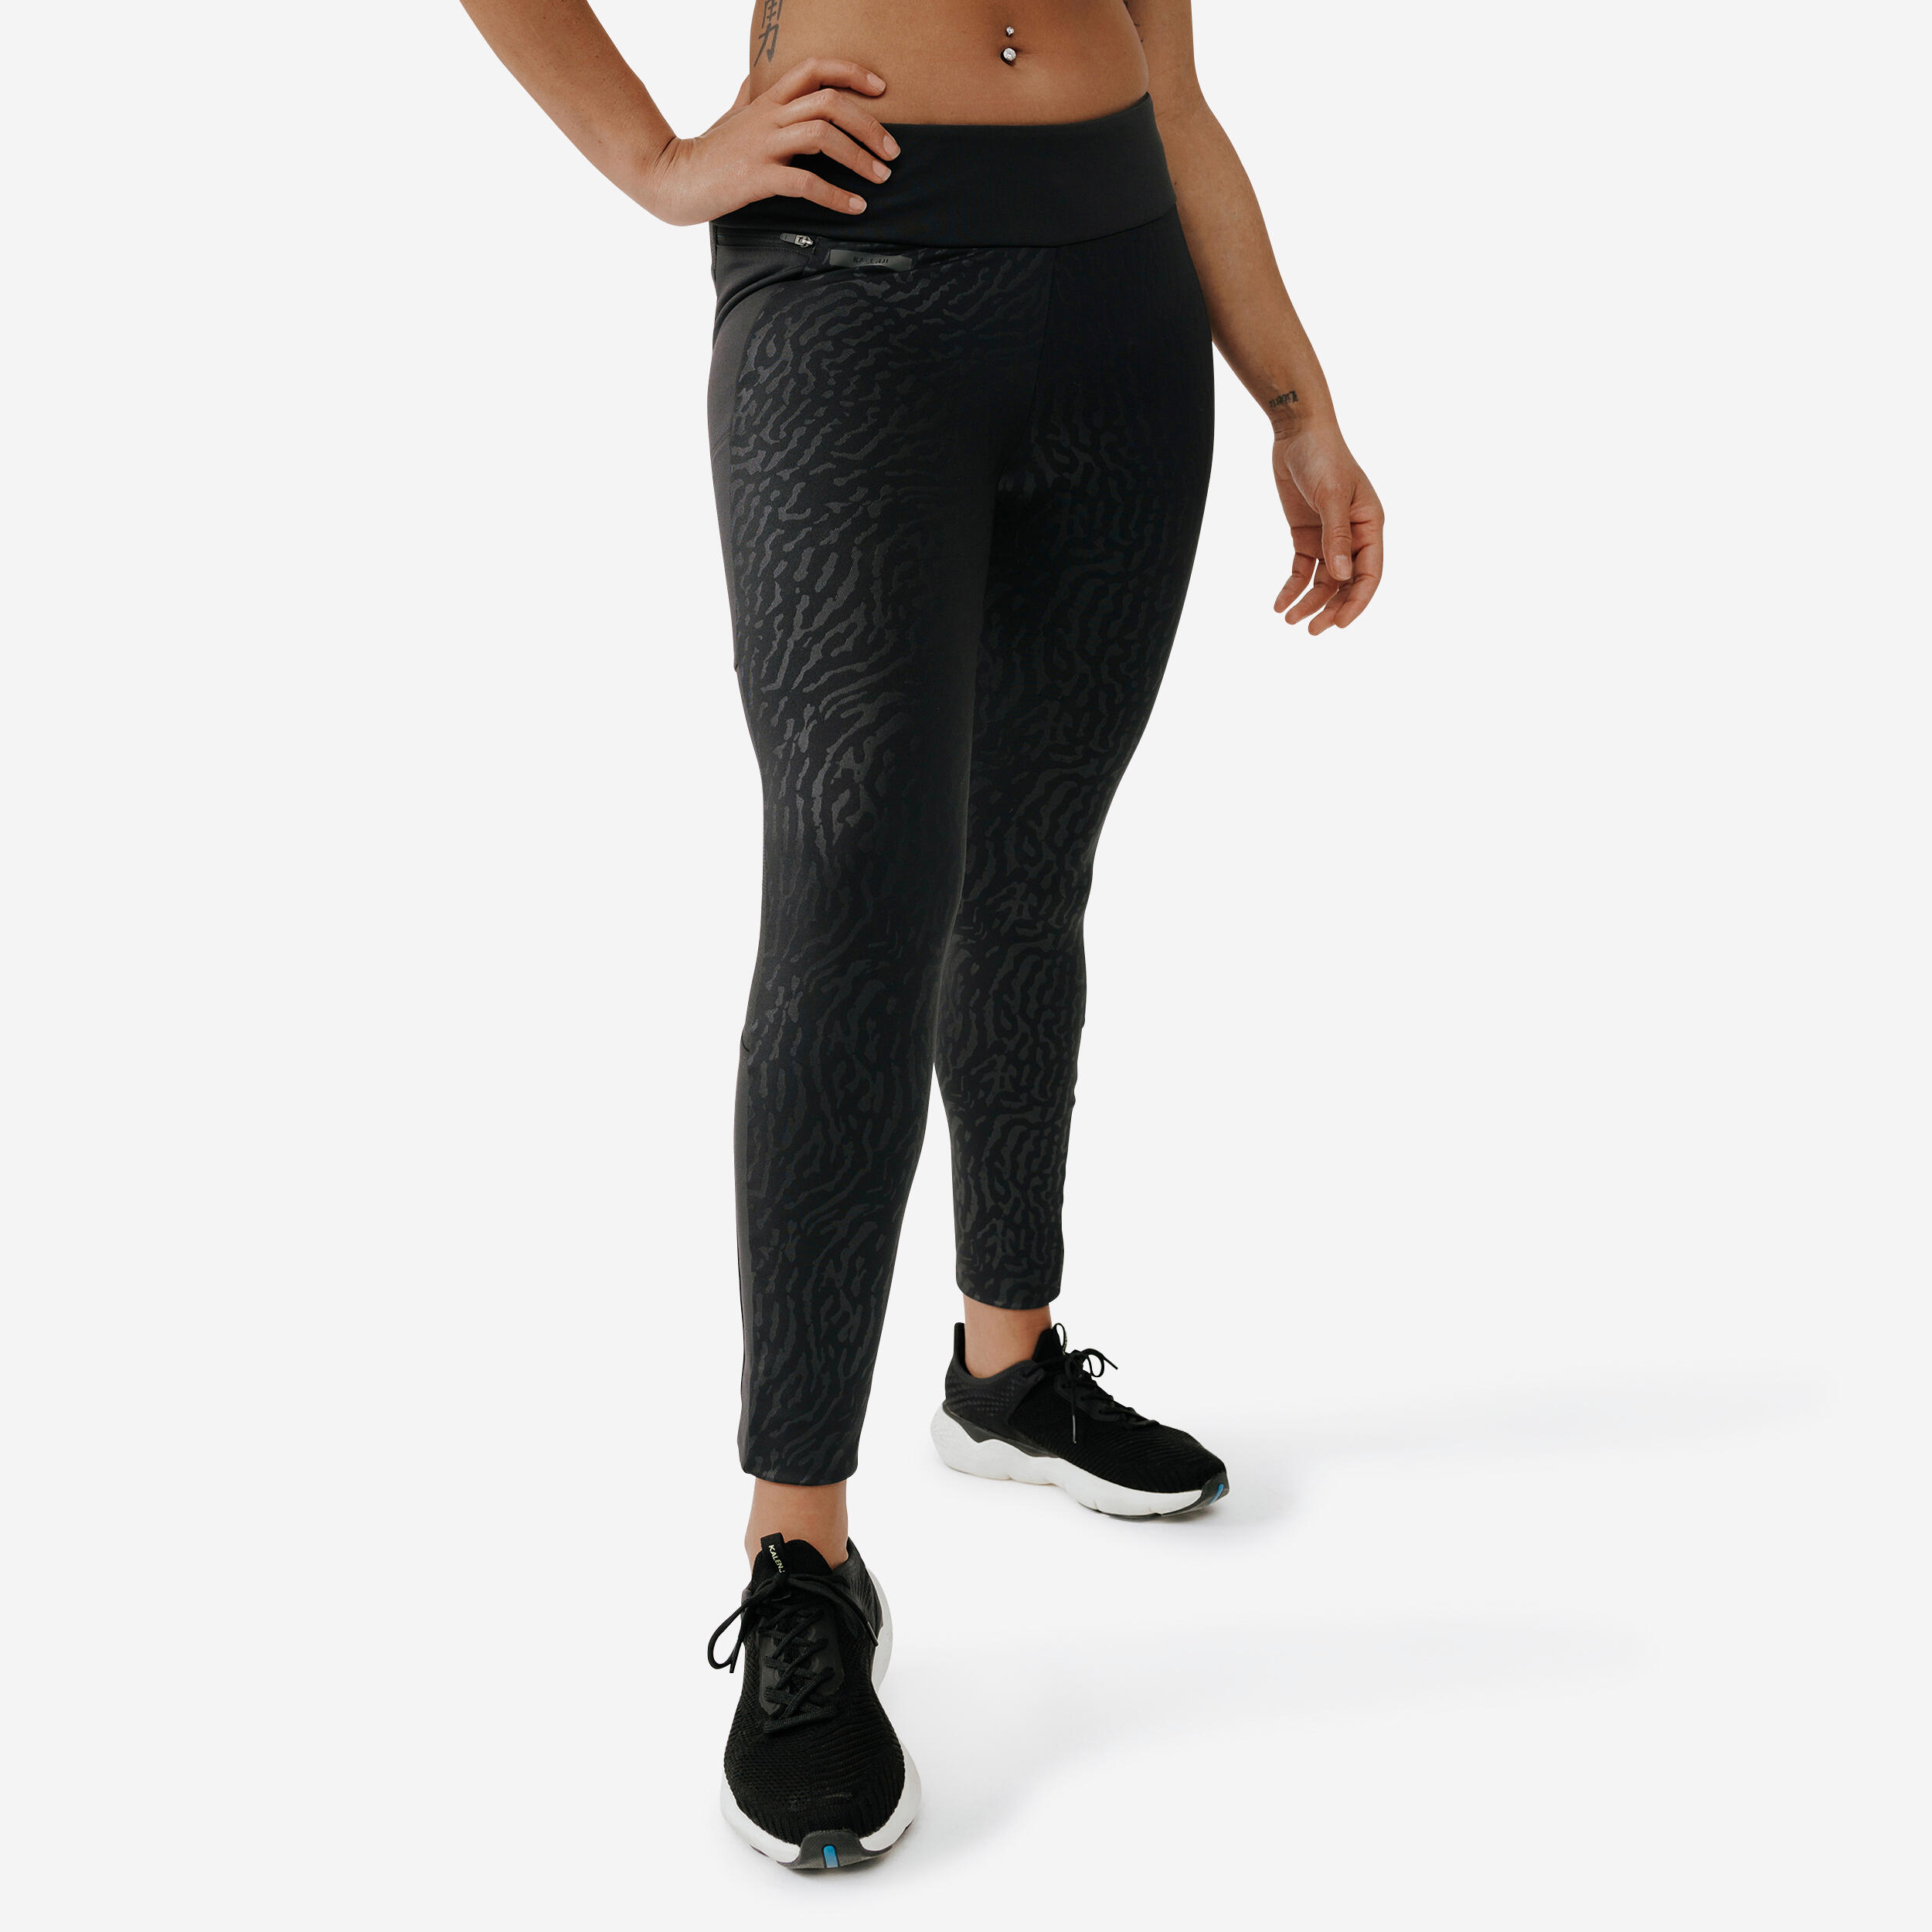 Warm+ Women's Running Warm Long Leggings - black with patterns KALENJI